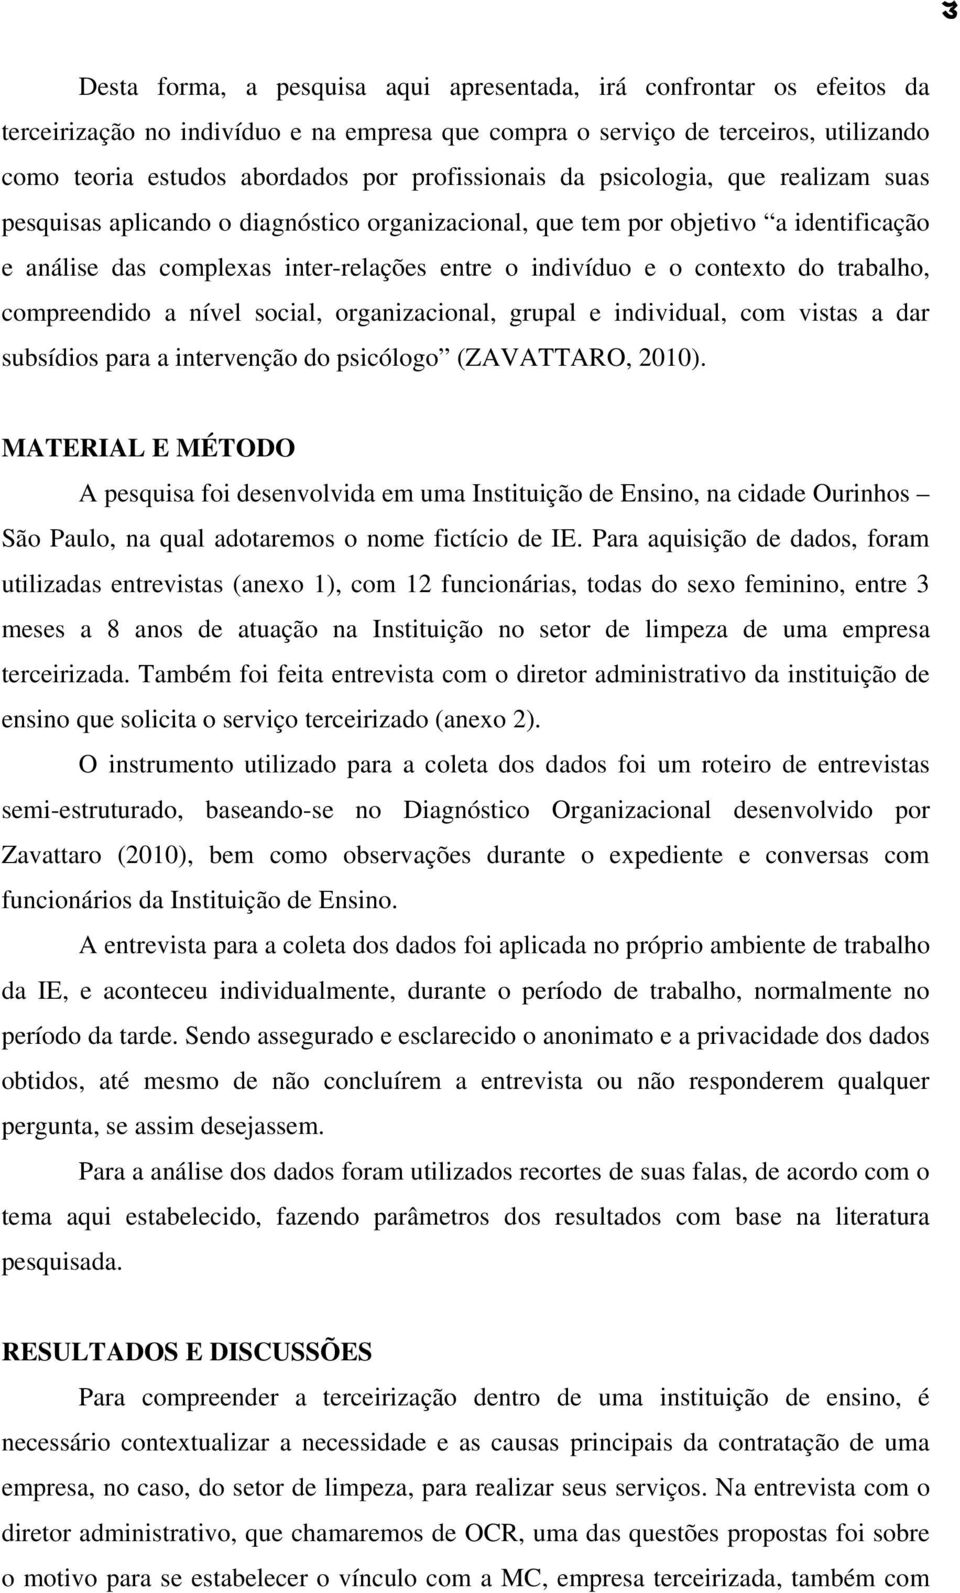 contexto do trabalho, compreendido a nível social, organizacional, grupal e individual, com vistas a dar subsídios para a intervenção do psicólogo (ZAVATTARO, 2010).